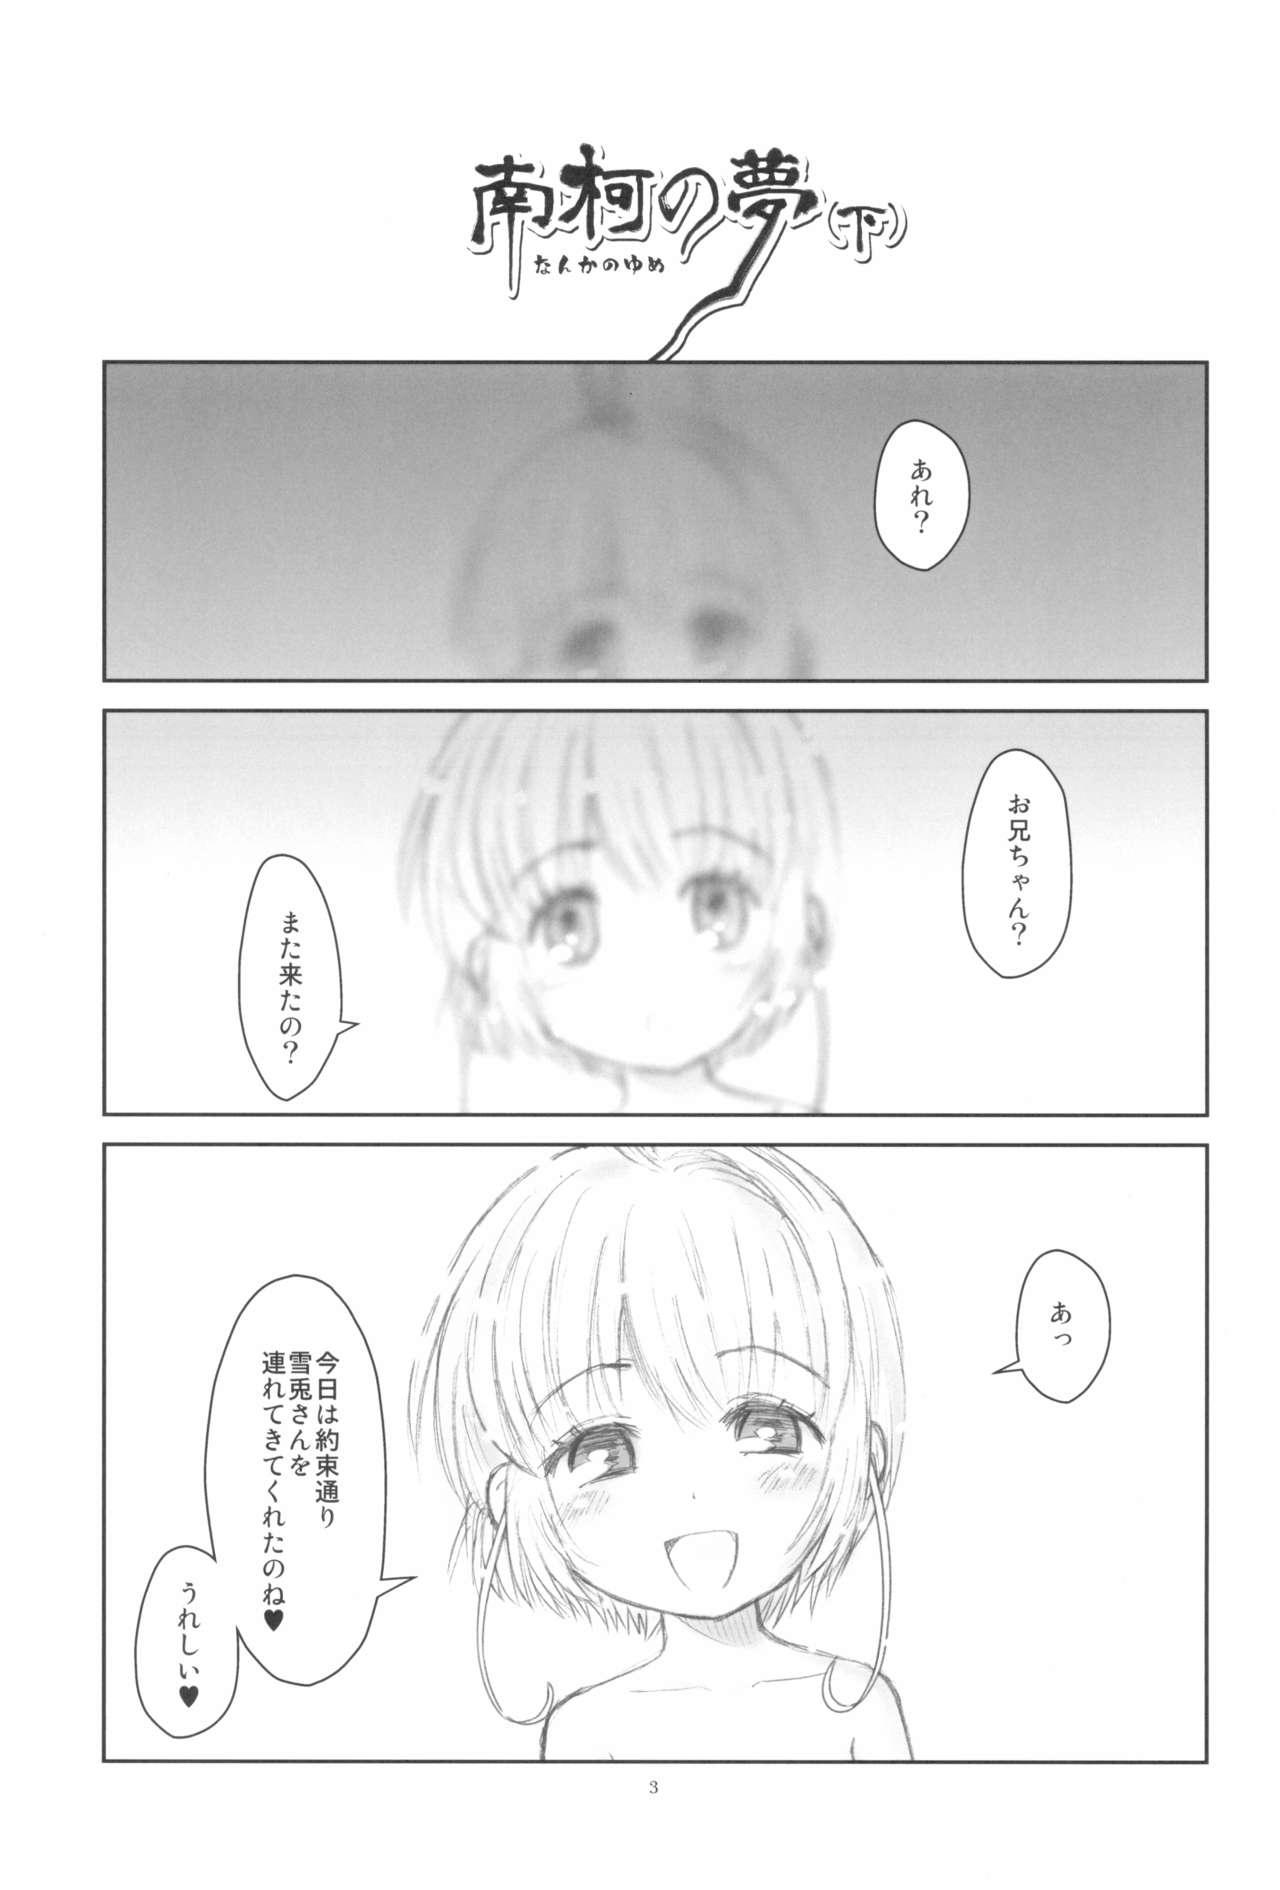 Animated Hinnyuu Musume 38 - Cardcaptor sakura Tit - Page 5